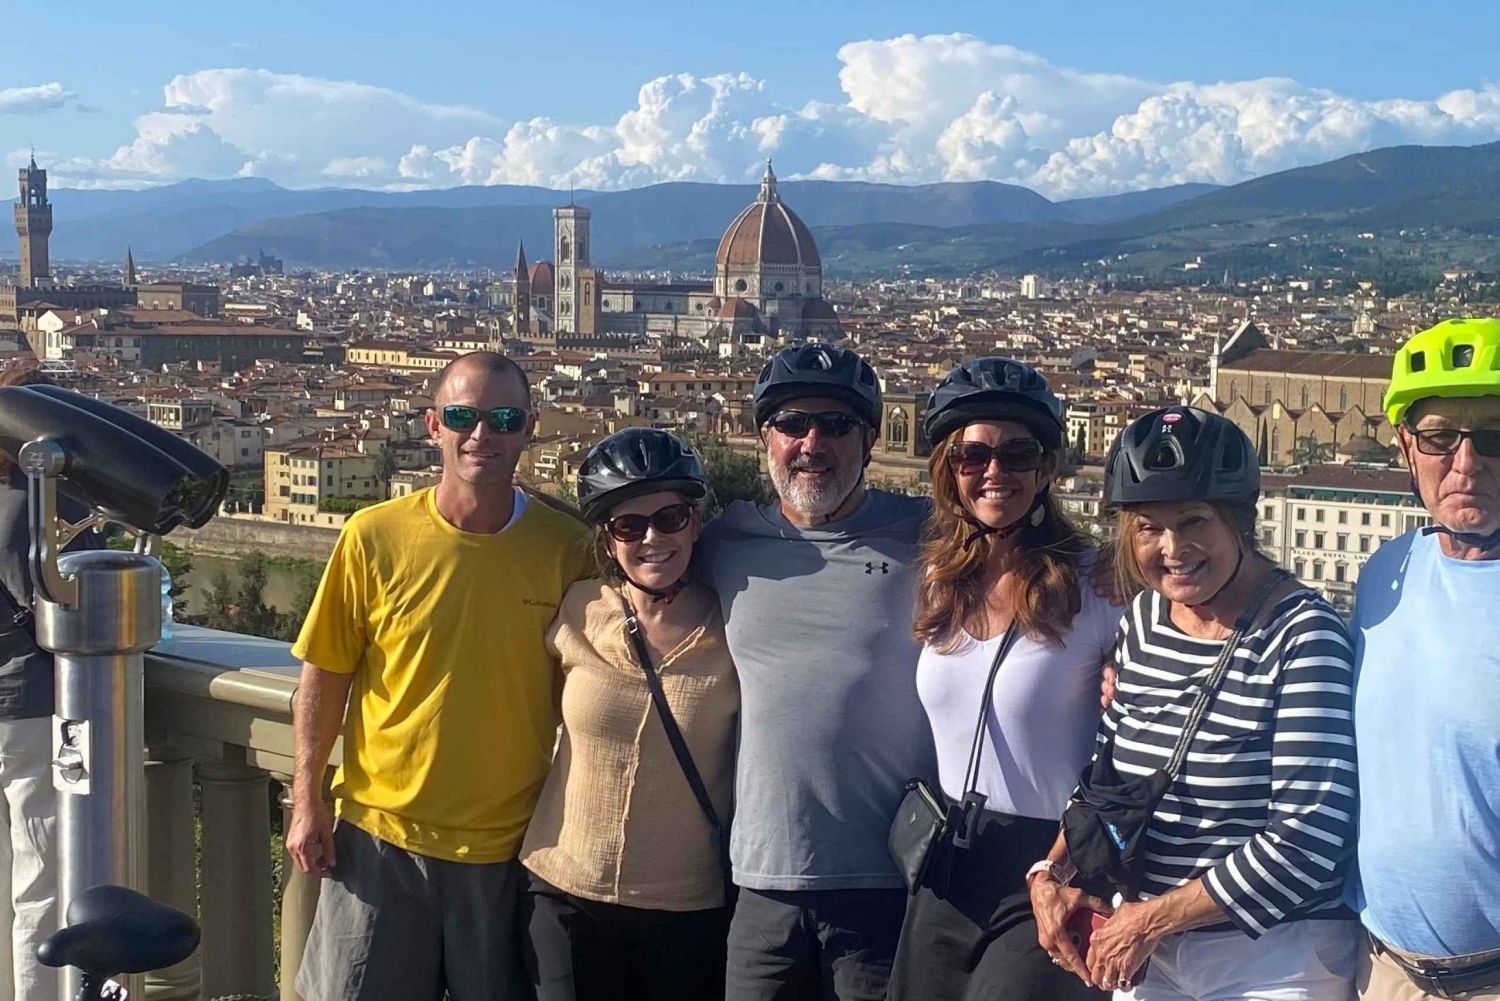 Visita guiada en bicicleta eléctrica por las colinas de Florencia, degustación de vinos y comida en Chianti